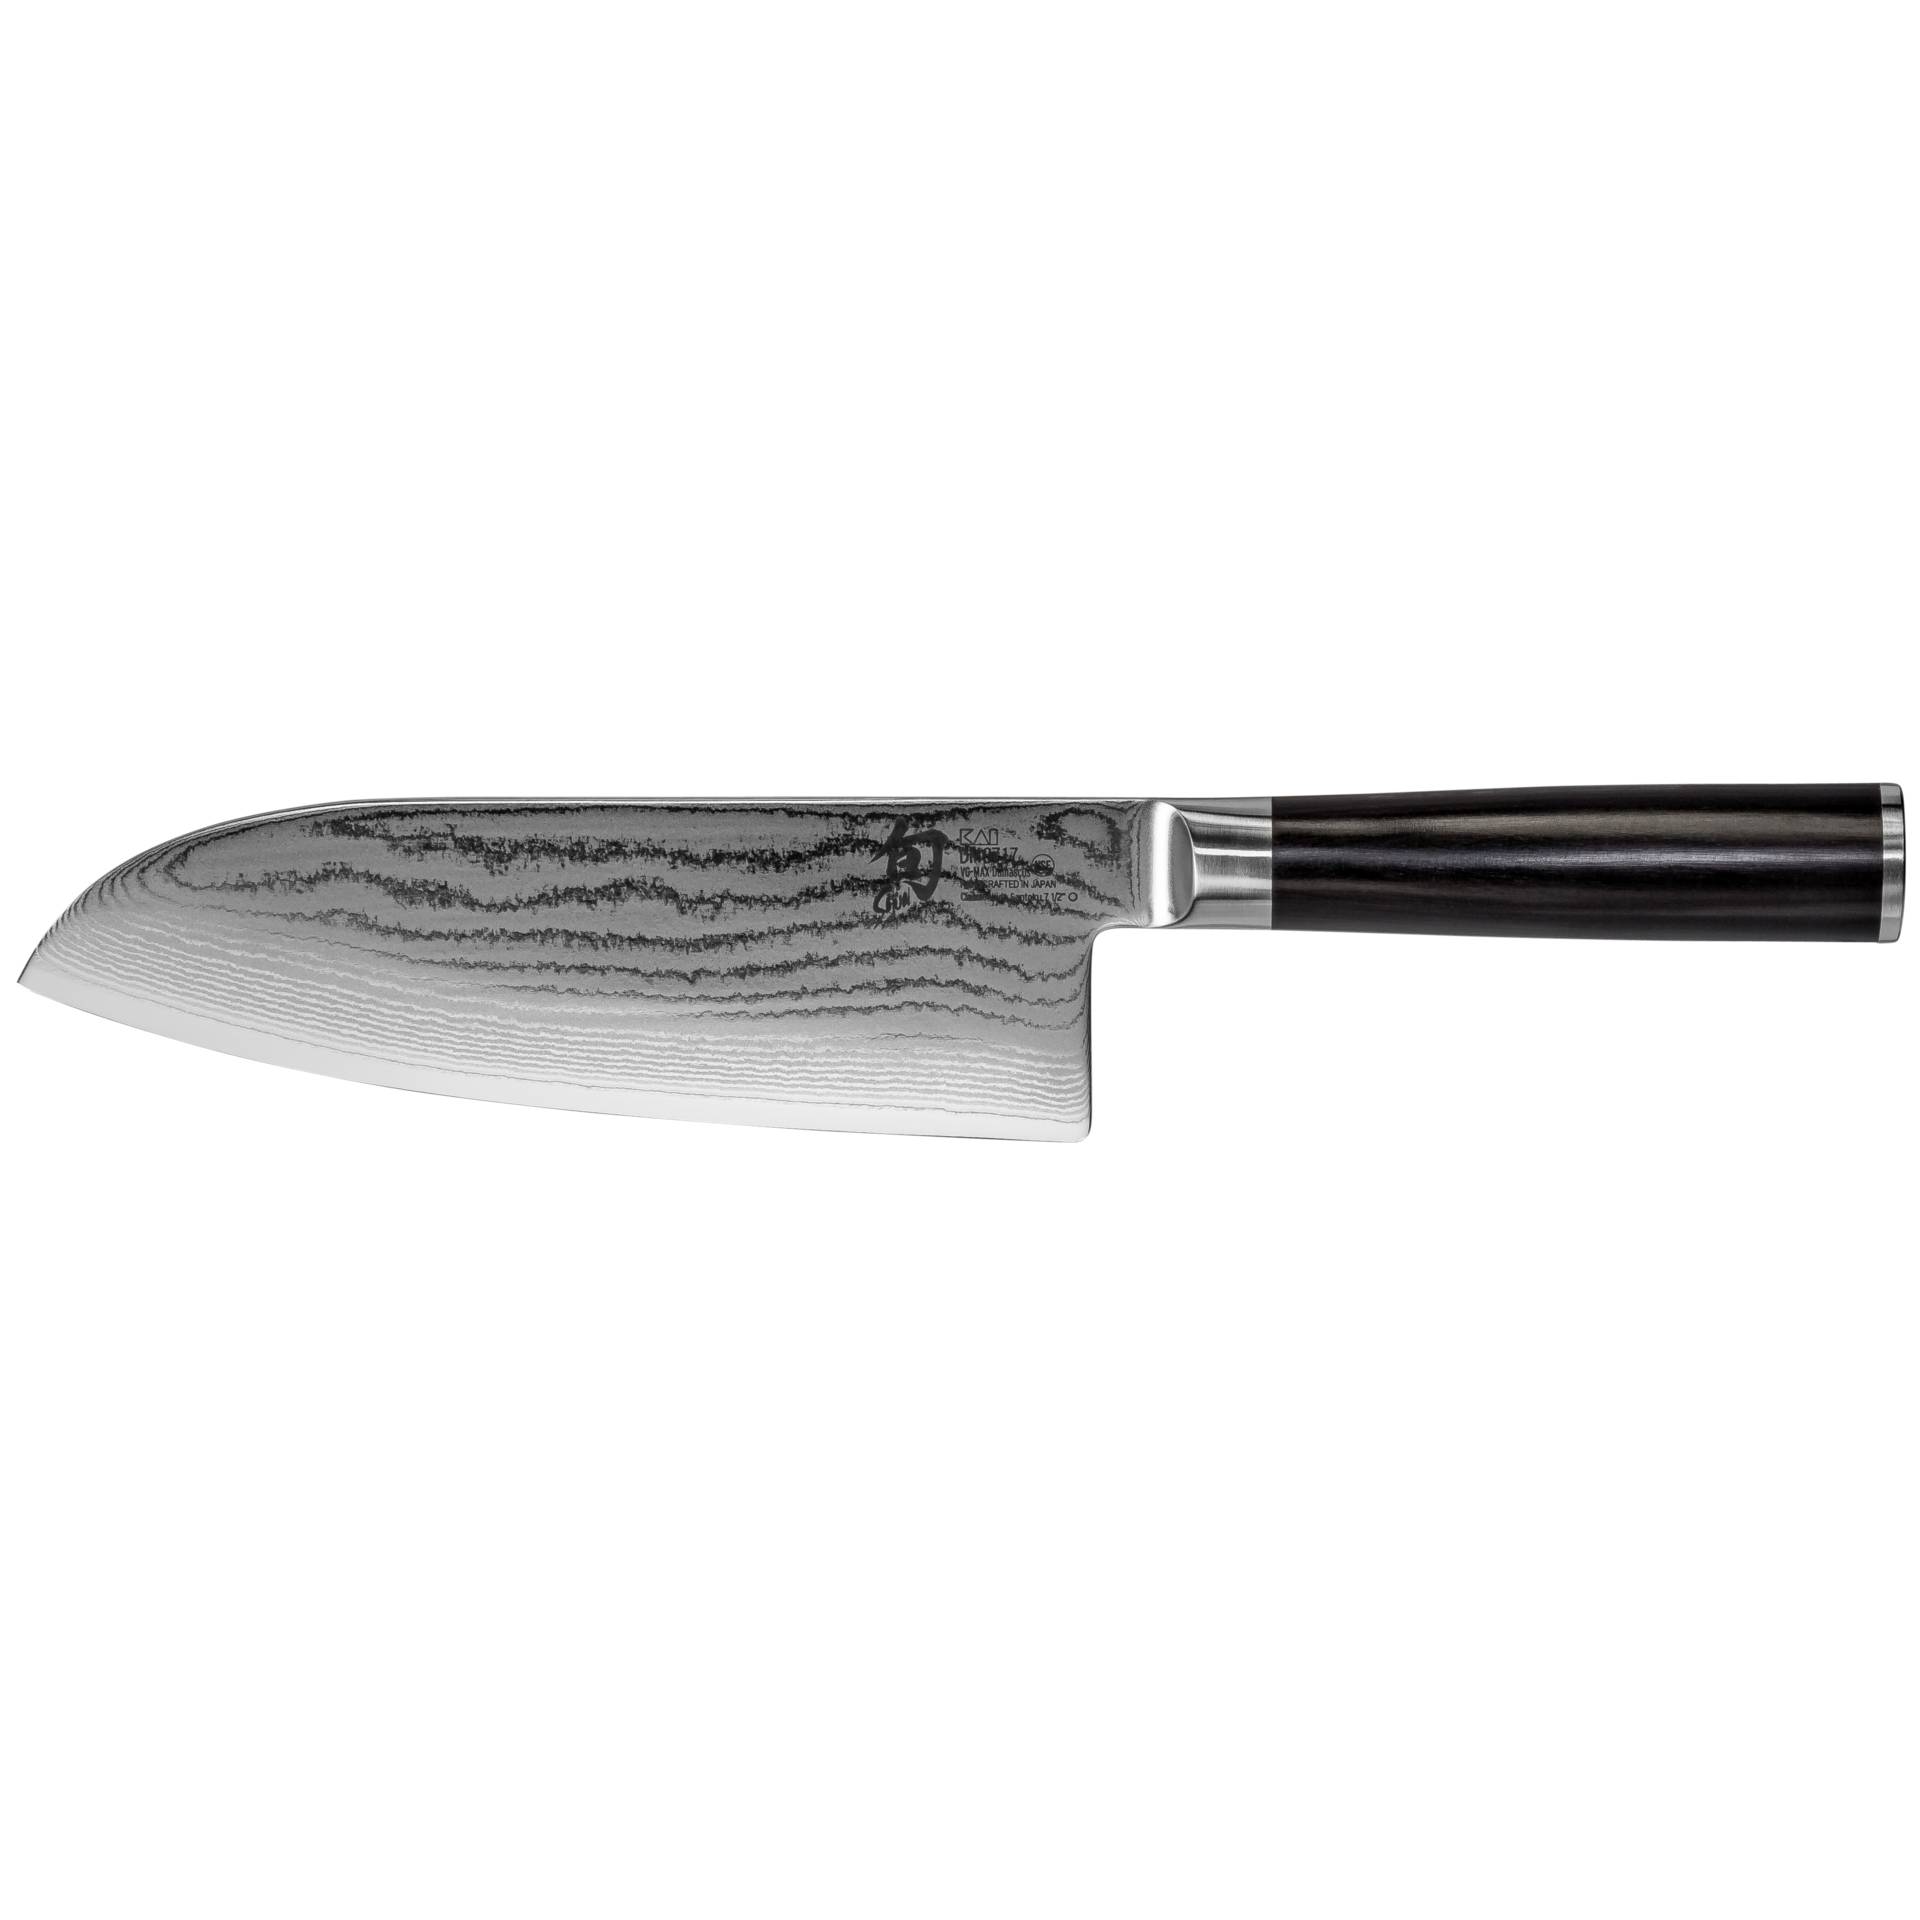 KAI Shun Classic coltello Santoku 19,0cm